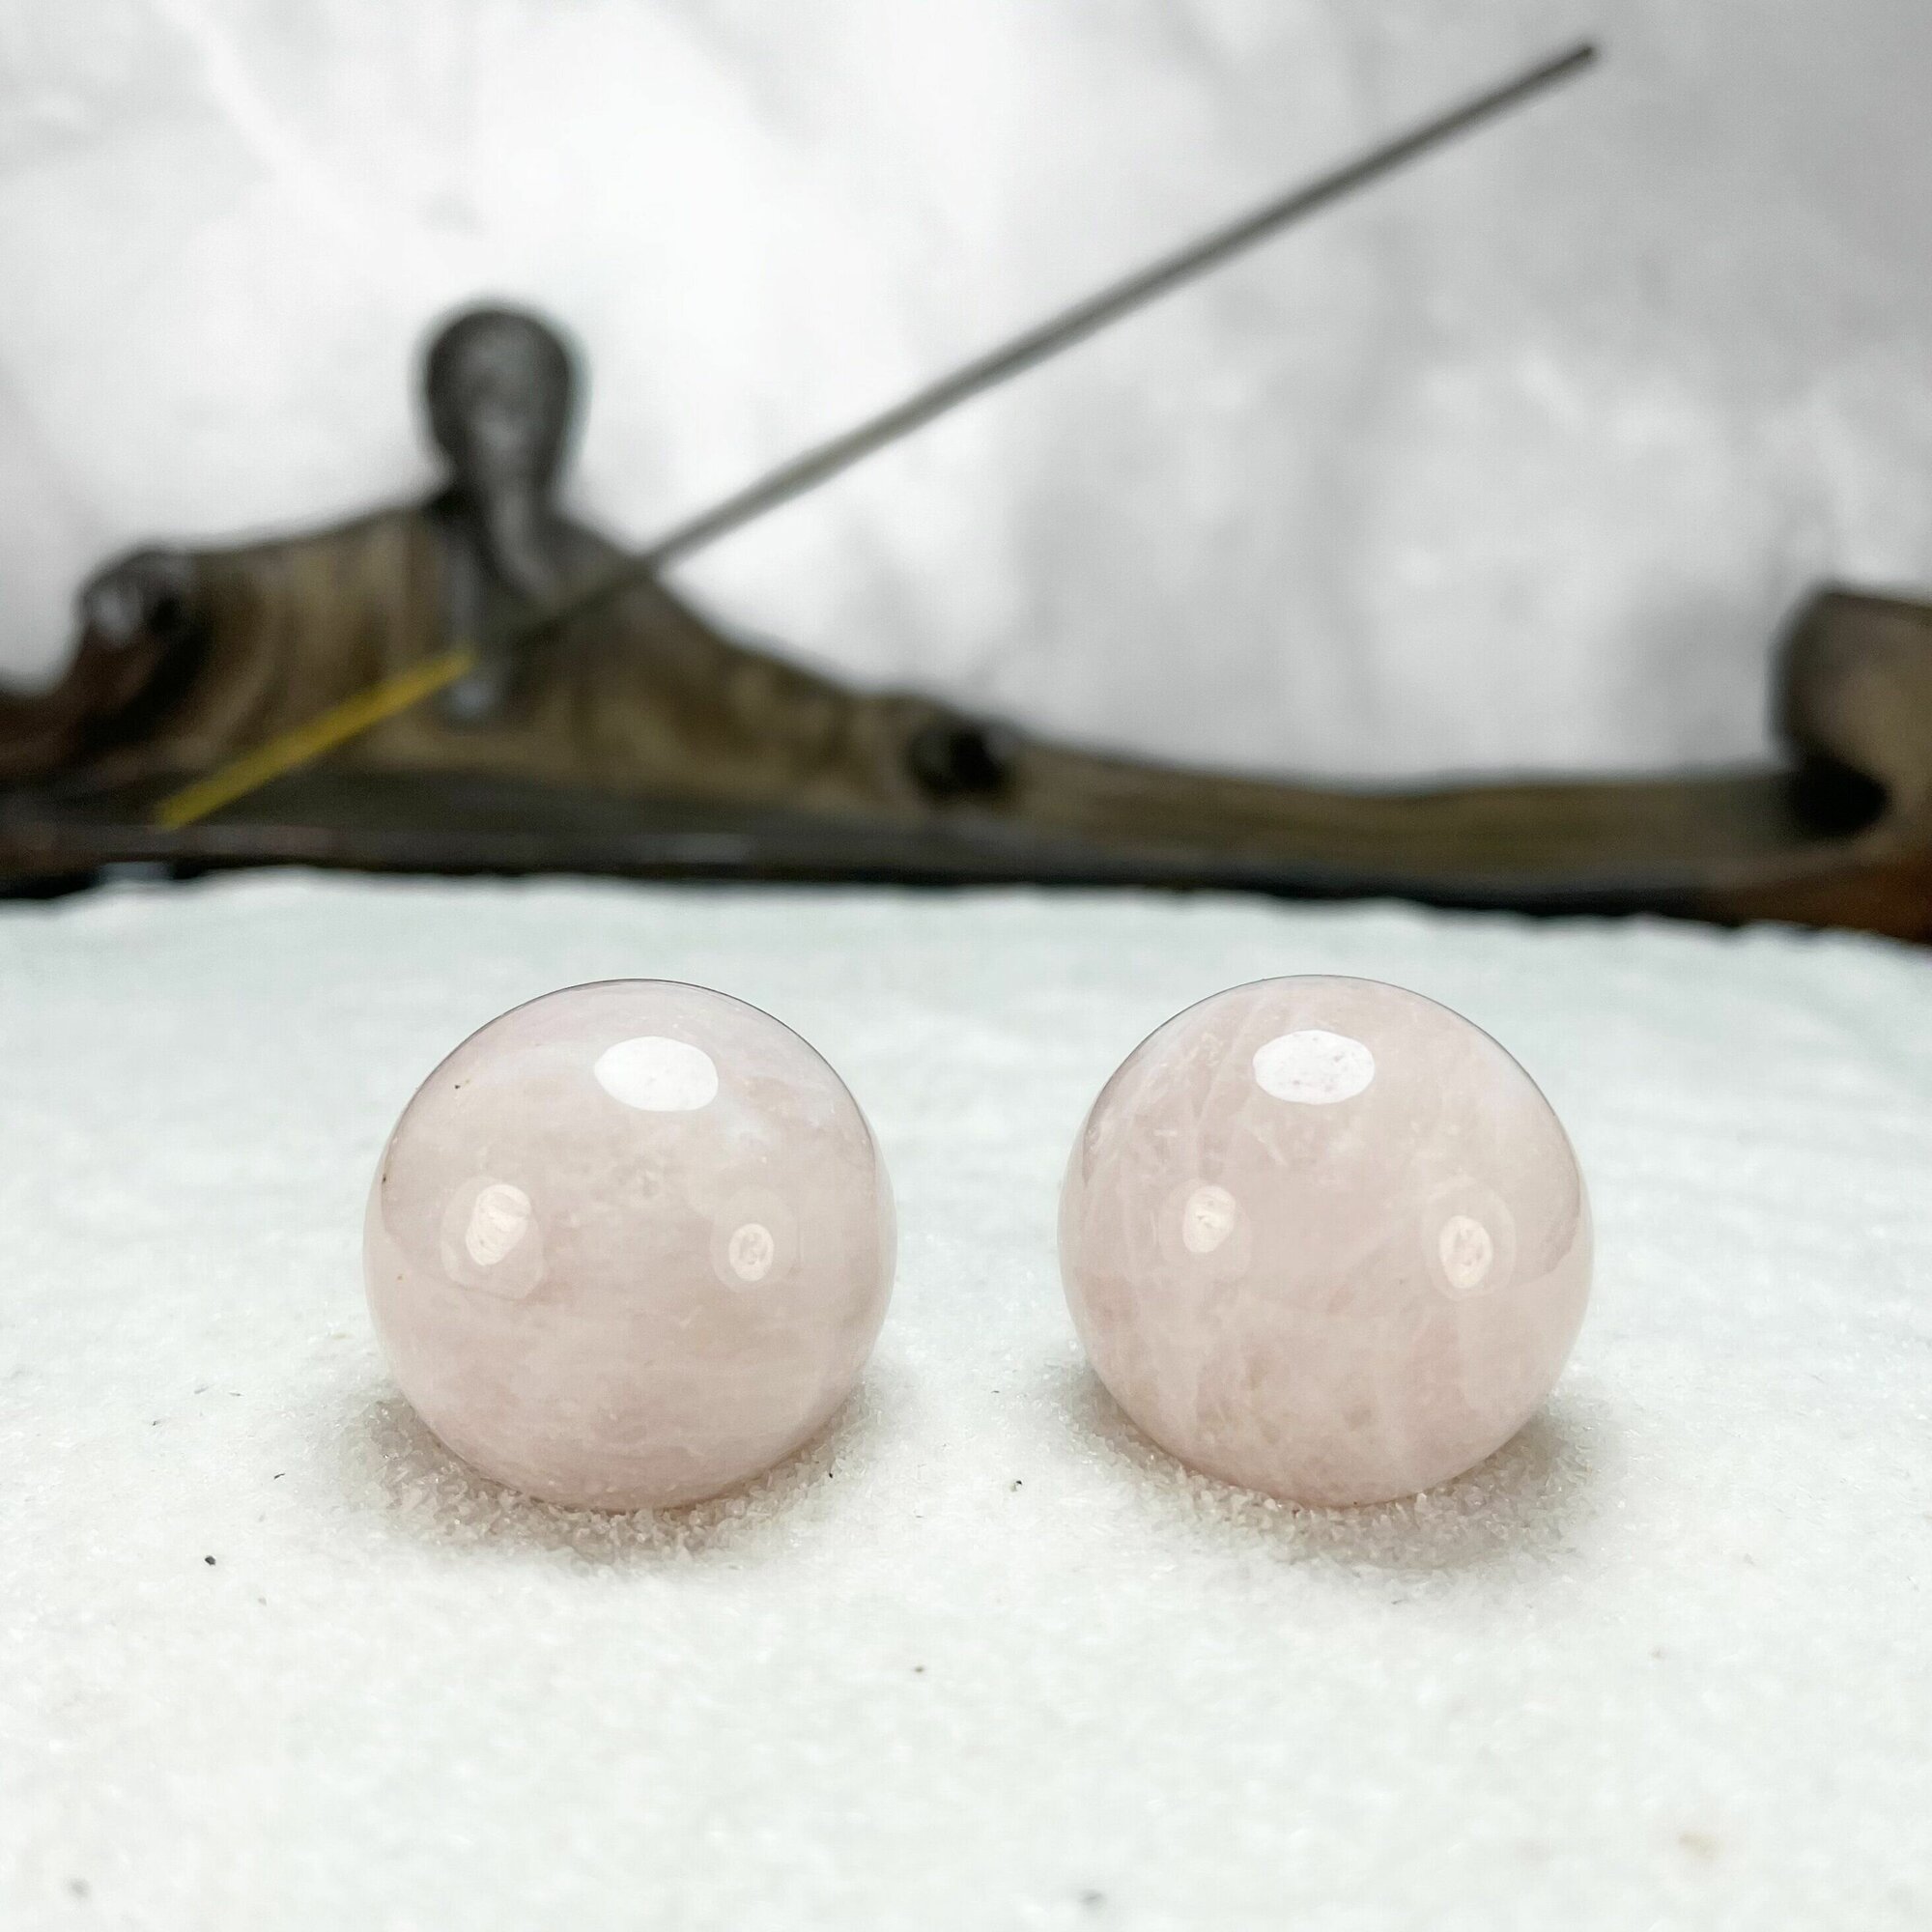 Массажные шары Бао для здоровья и медитации, антистресс, из натурального камня Розовый кварц, диаметр 23-25 мм, 2 шт